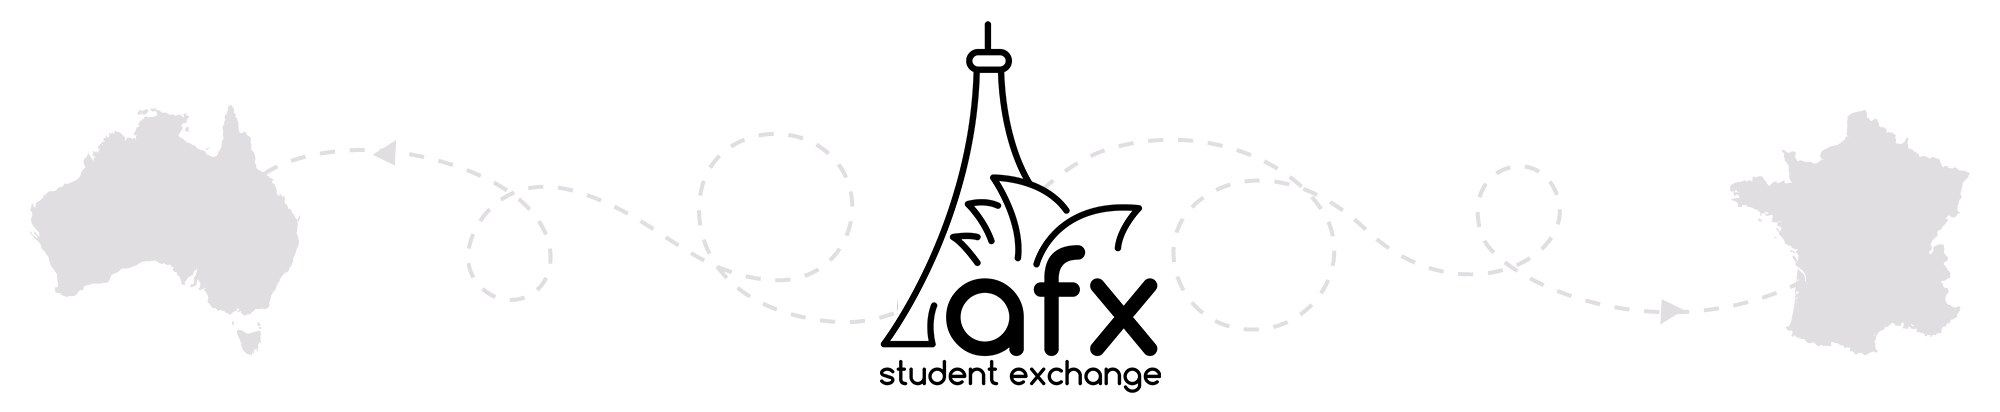 afx-new-logo